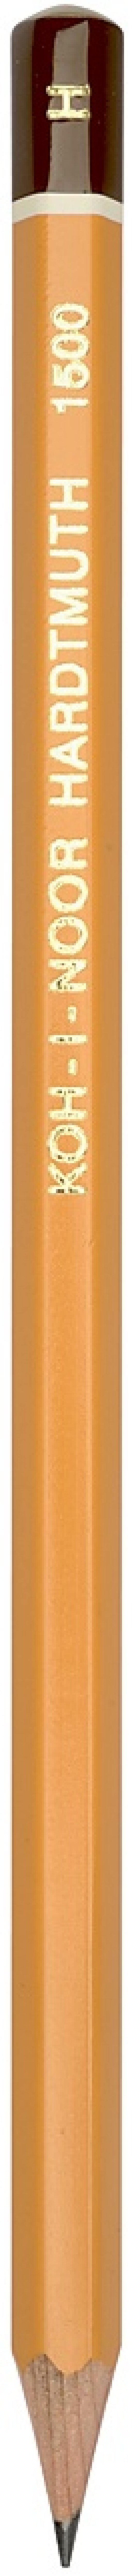 Карандаш чернографитный Koh-i-Noor 1500 H 17.5 см 1500 H